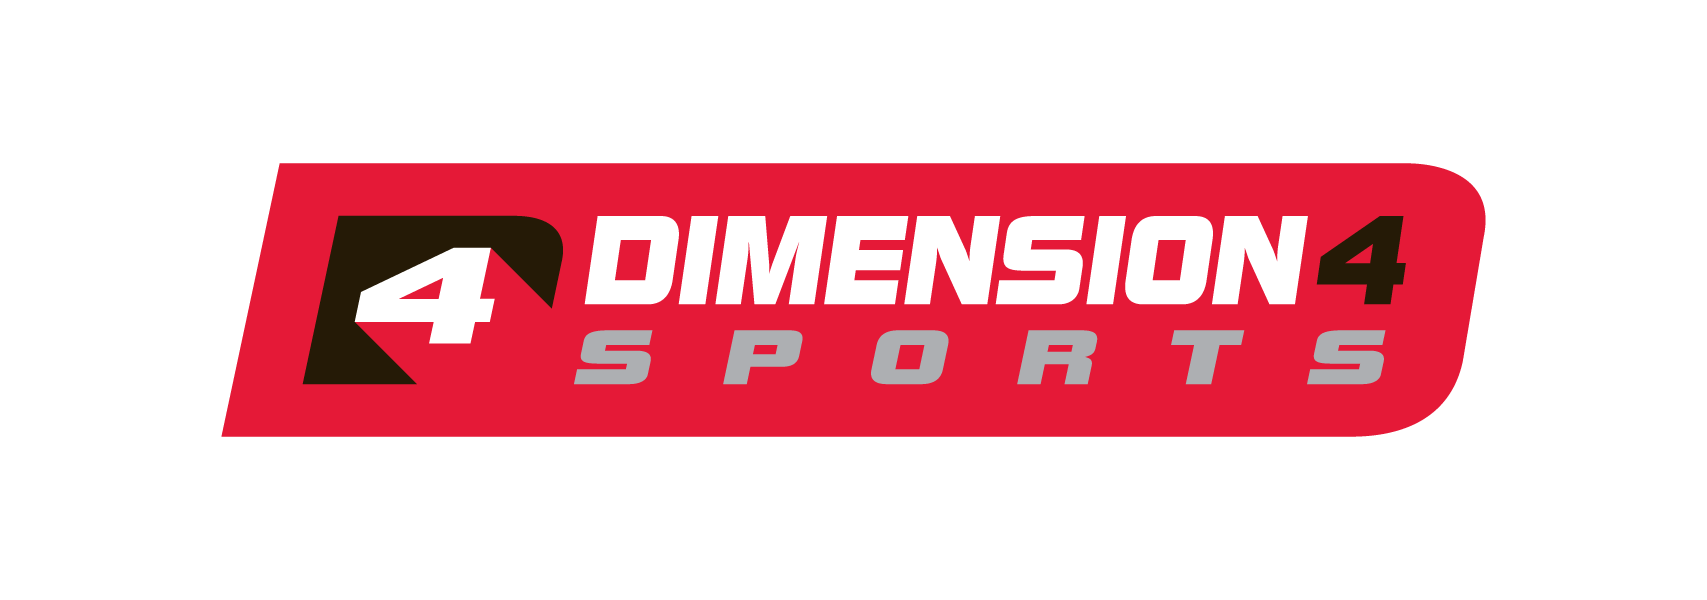 Dimension 4 Sports